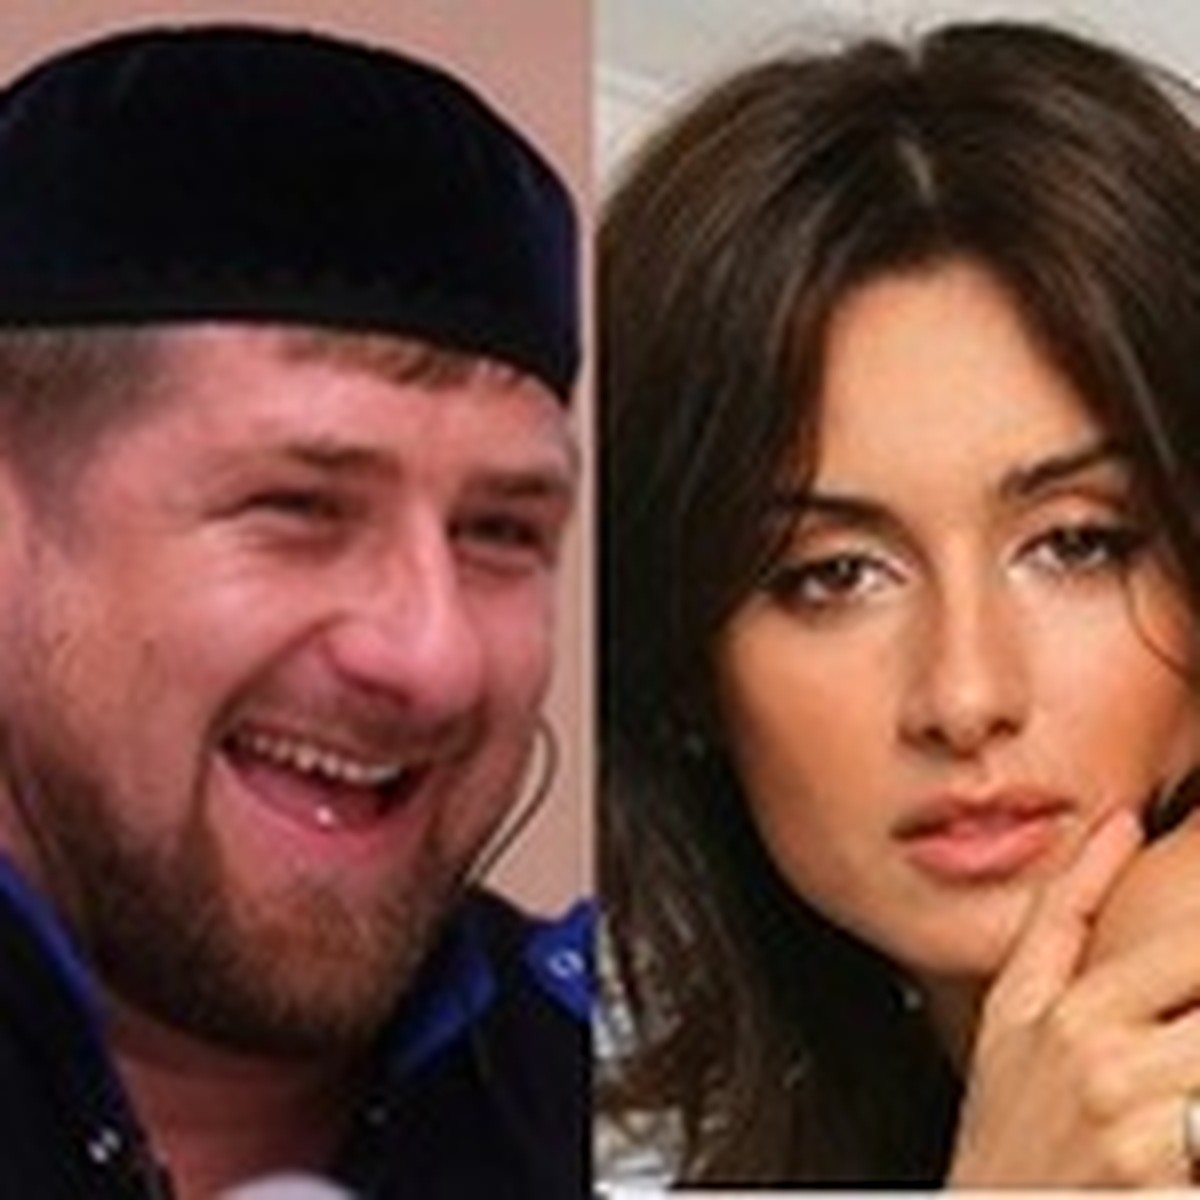 Рамзан Кадыров поздравил соотечественников с Днем семьи, любви и верности